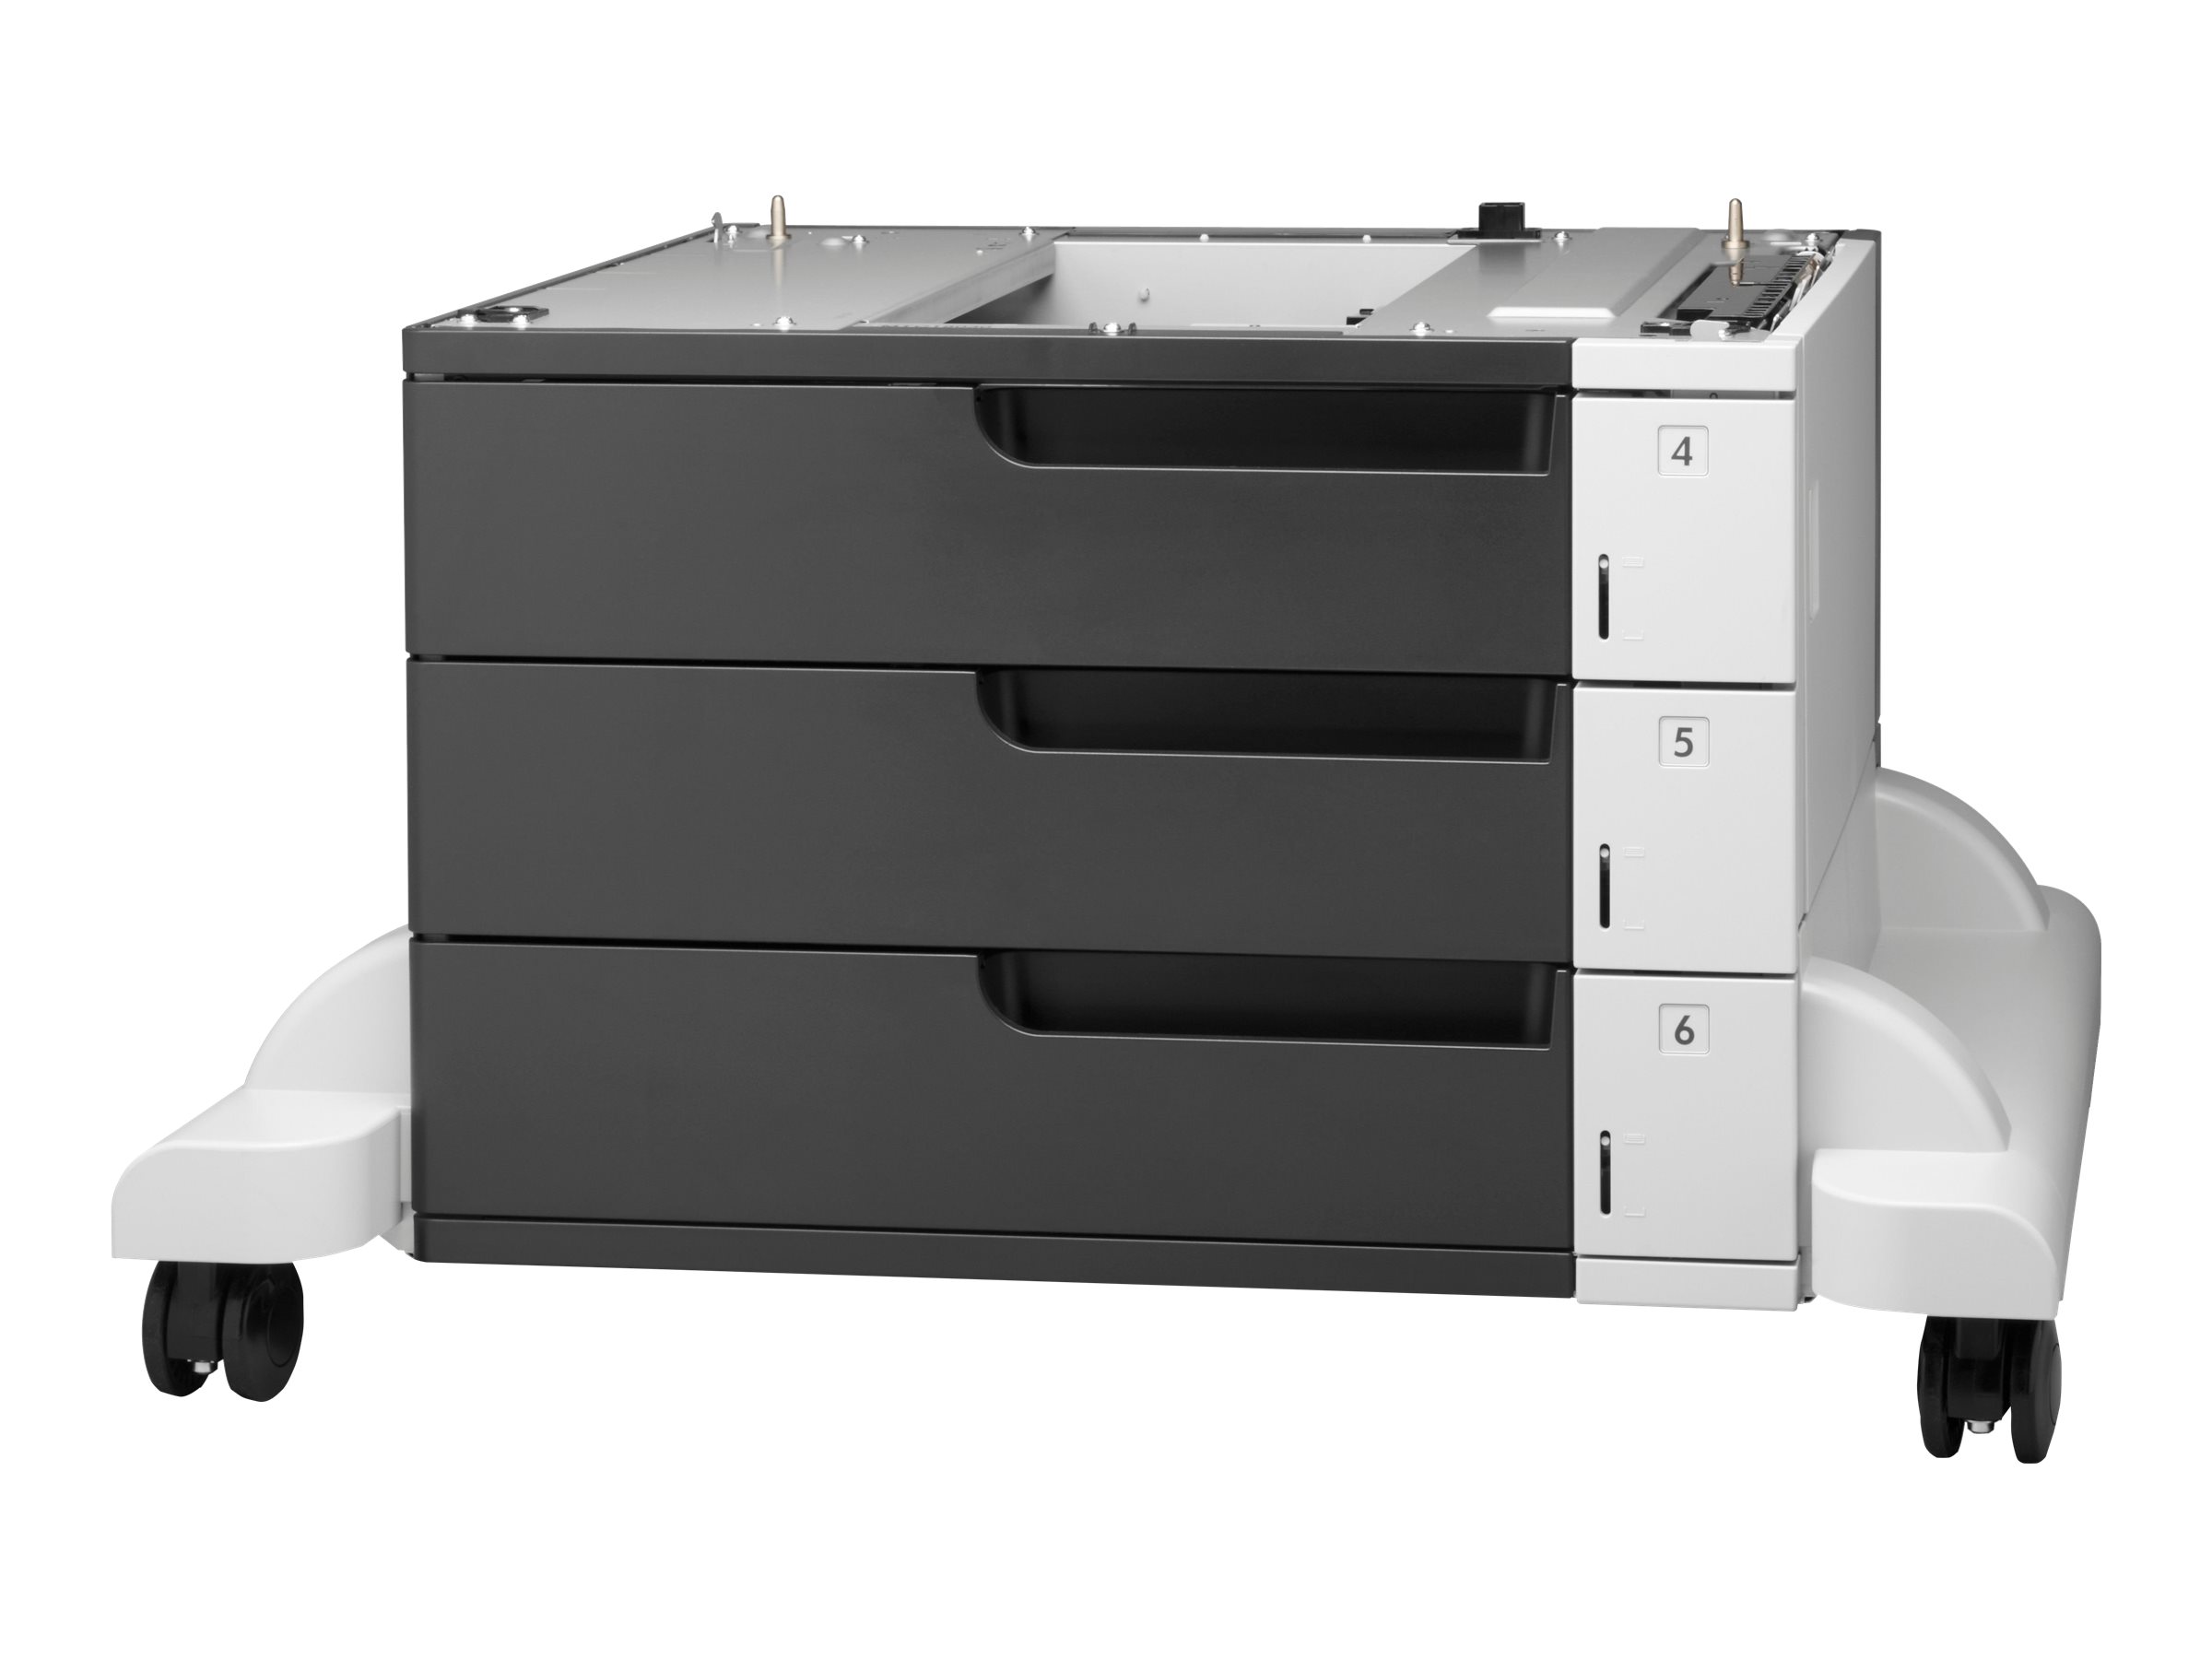 HP - Medienfach / Zufhrung - 1500 Bltter in 3 Schubladen (Trays) - fr LaserJet Enterprise 700, MFP M725; LaserJet Managed MFP